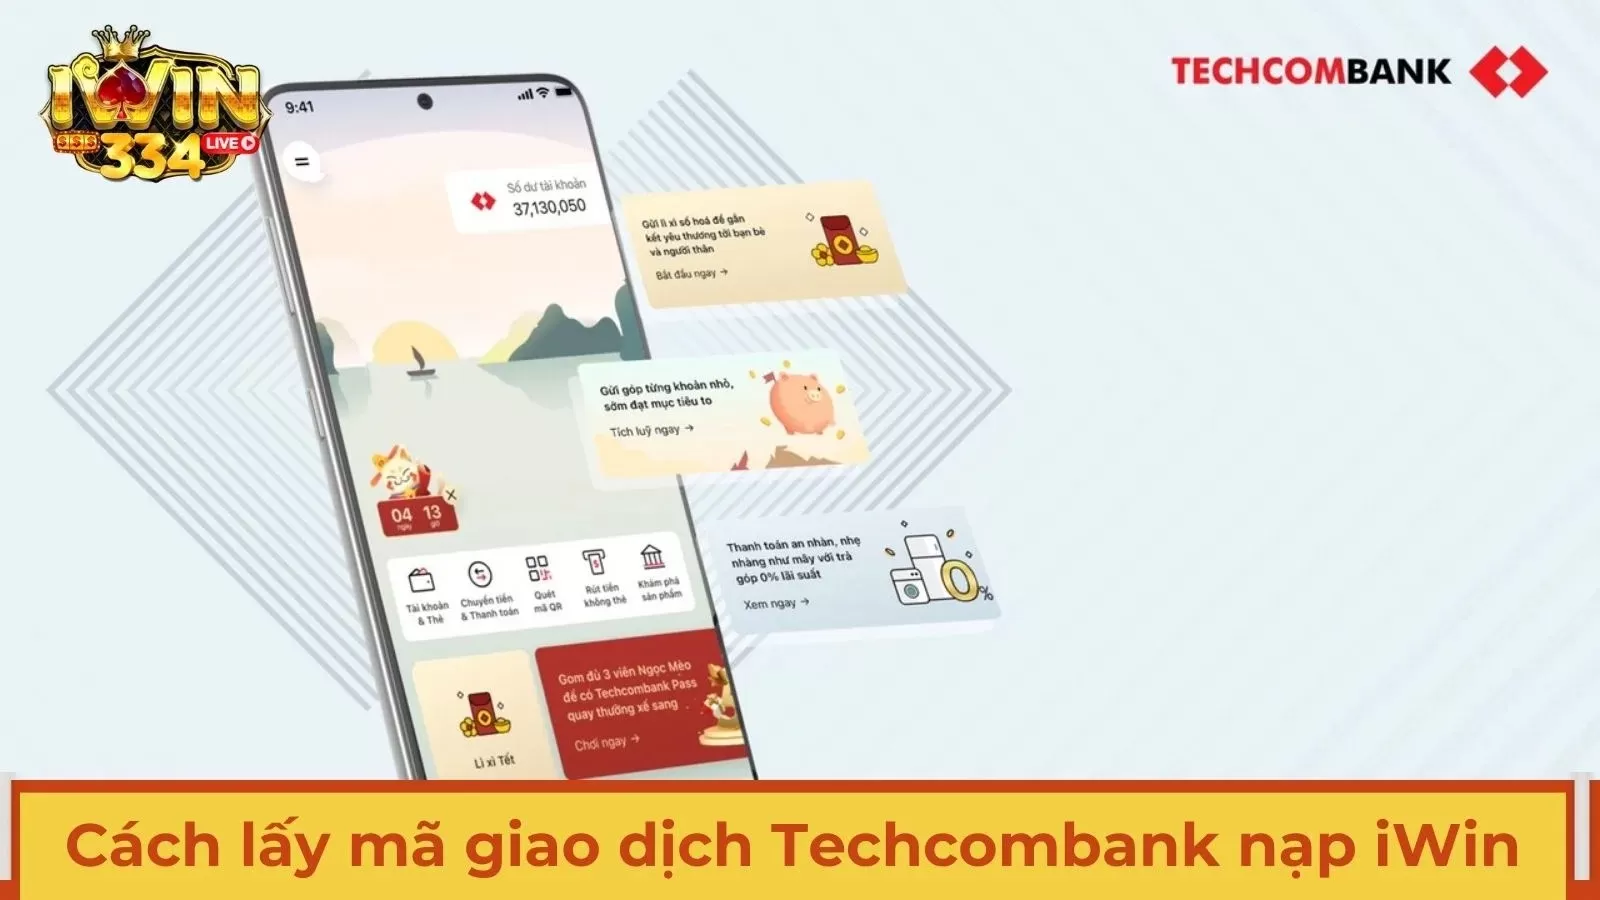 Hướng dẫn cách lấy mã giao dịch ngân hàng Techcombank khi nạp tiền iWin